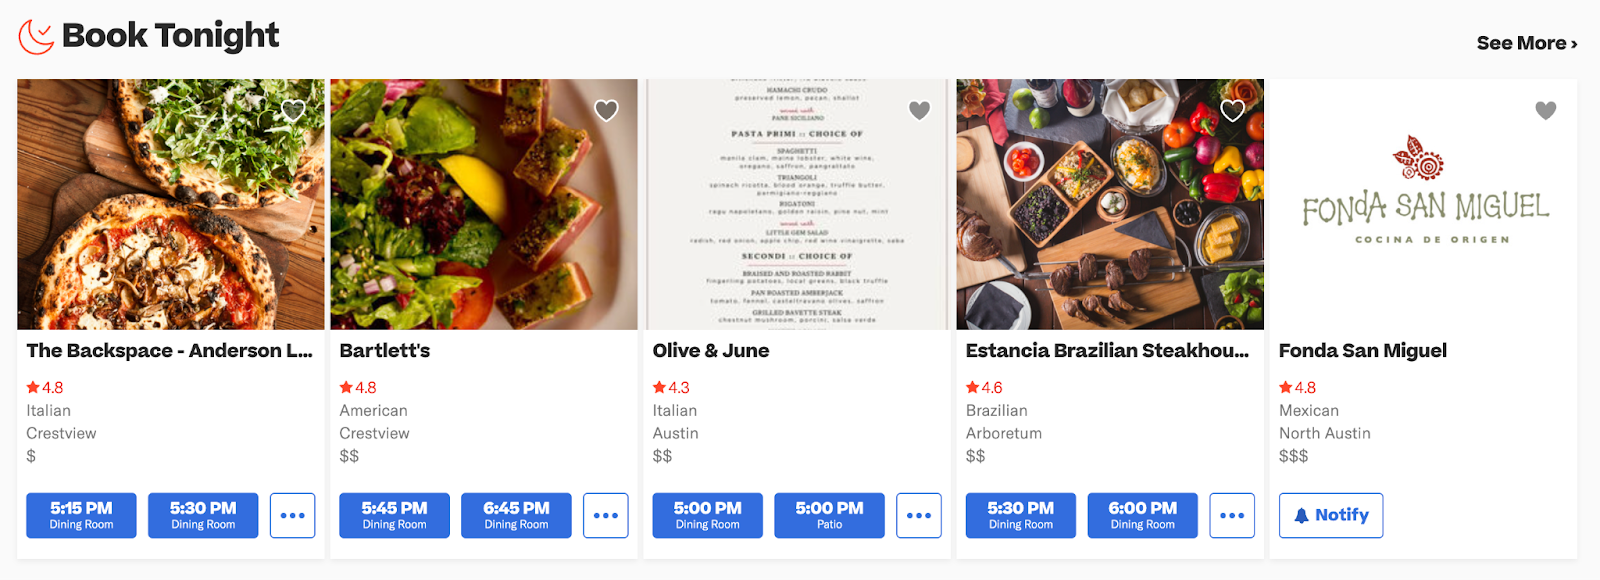 레스토랑 마케팅 아이디어: 예약 플랫폼 Resy는 빠르고 편리한 예약을 위해 레스토랑 가용성을 표시합니다.